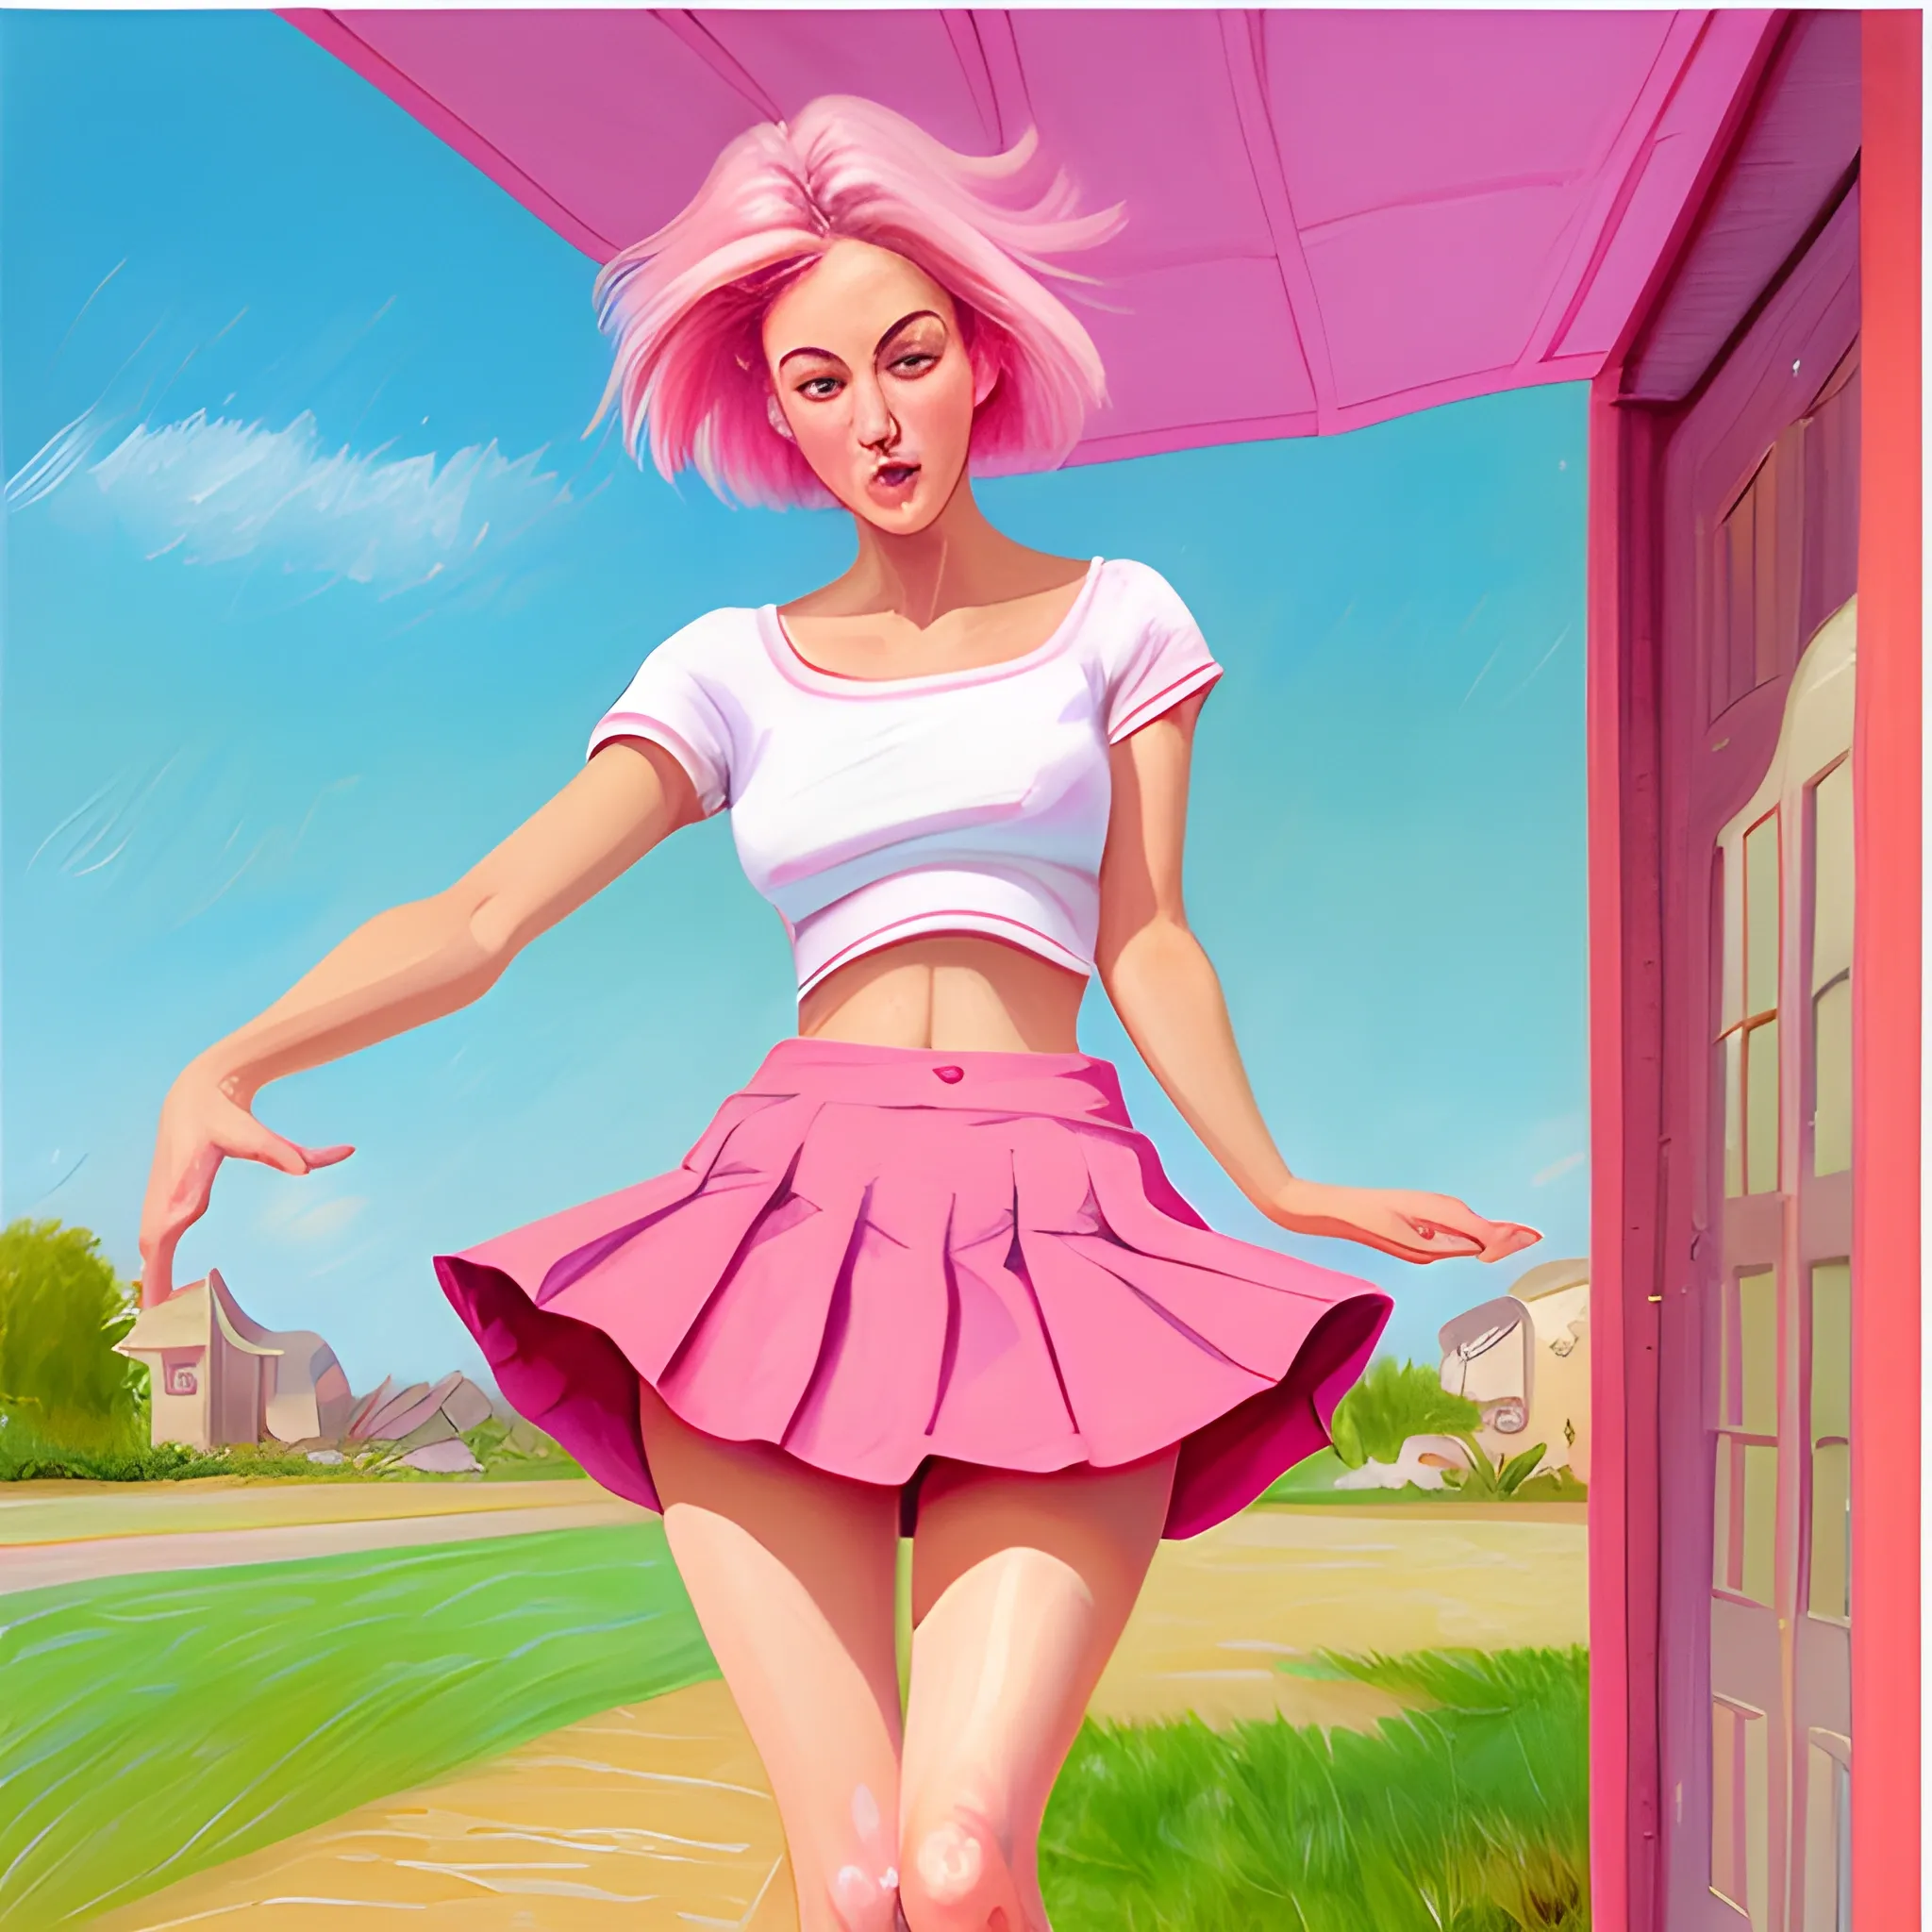 Women in a short skirt lifts skirt reveal her pink underwear , O 